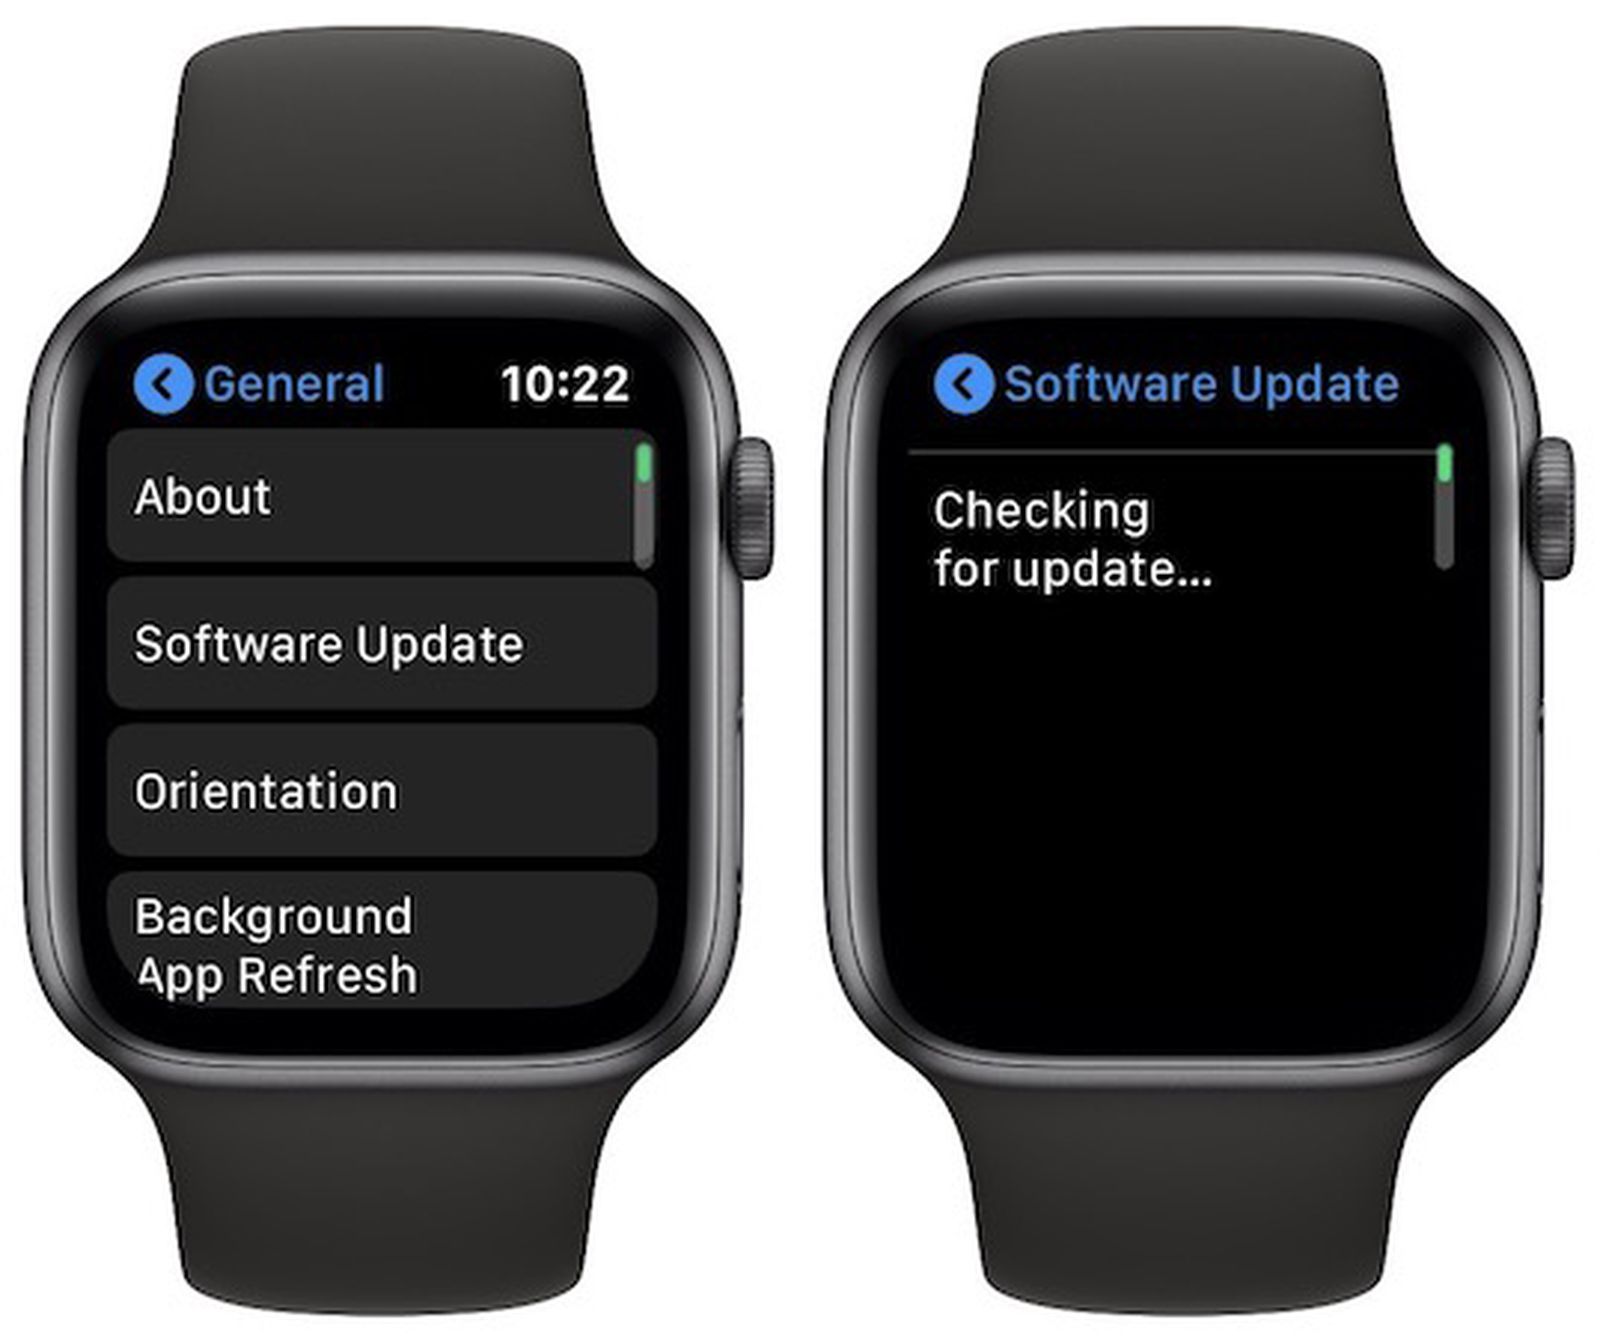 Apple Watch Gets OvertheAir Software Update Mechanism, But iPhone